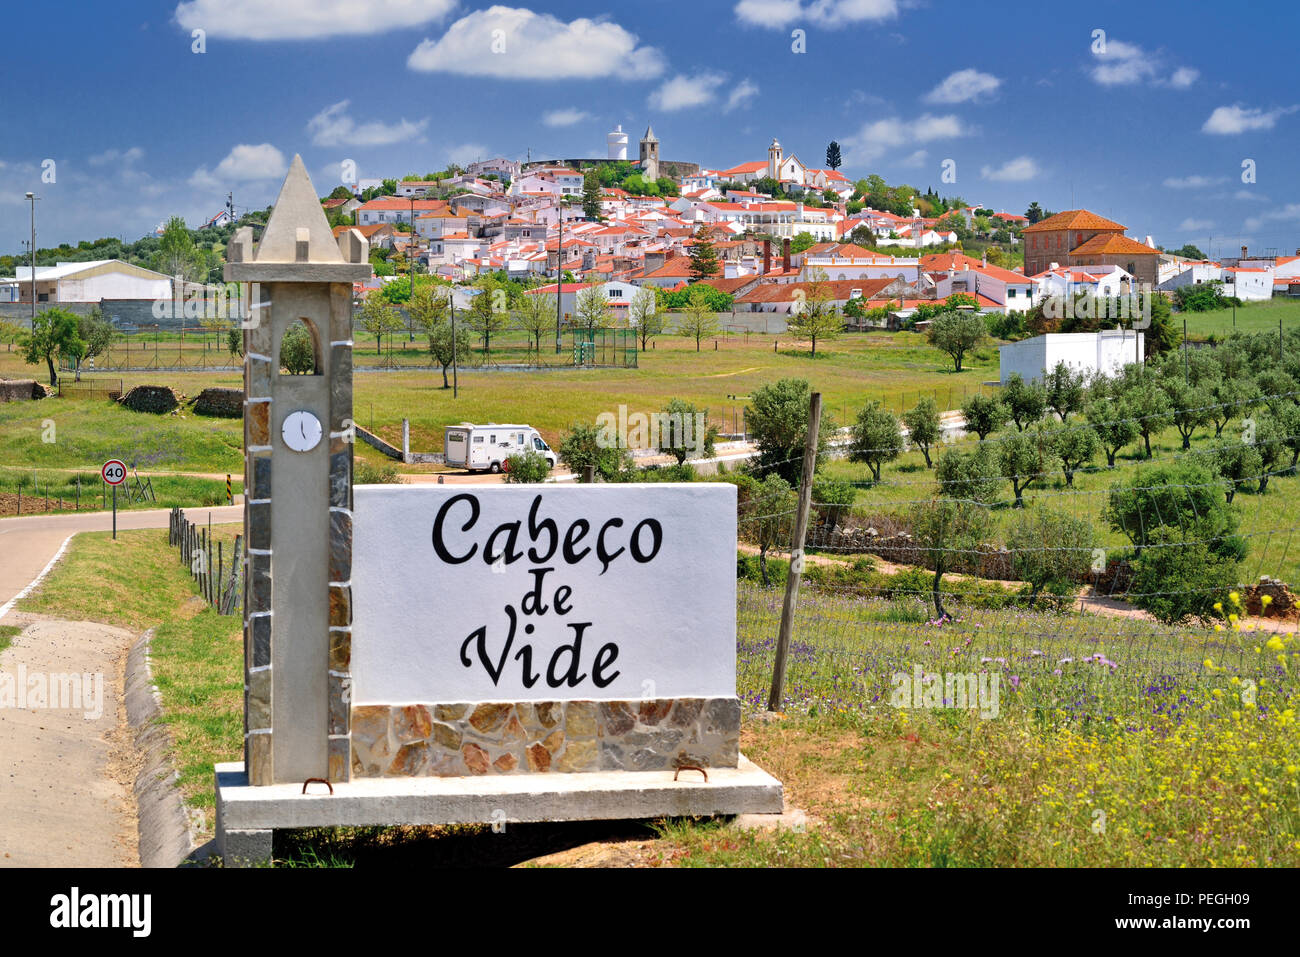 Eingang Signal in Form einer Kirche und Blick auf die idyllische Dorf Cabeco de Vide auf einem sanften grünen Hügel, umgeben von Olivenbäumen Stockfoto